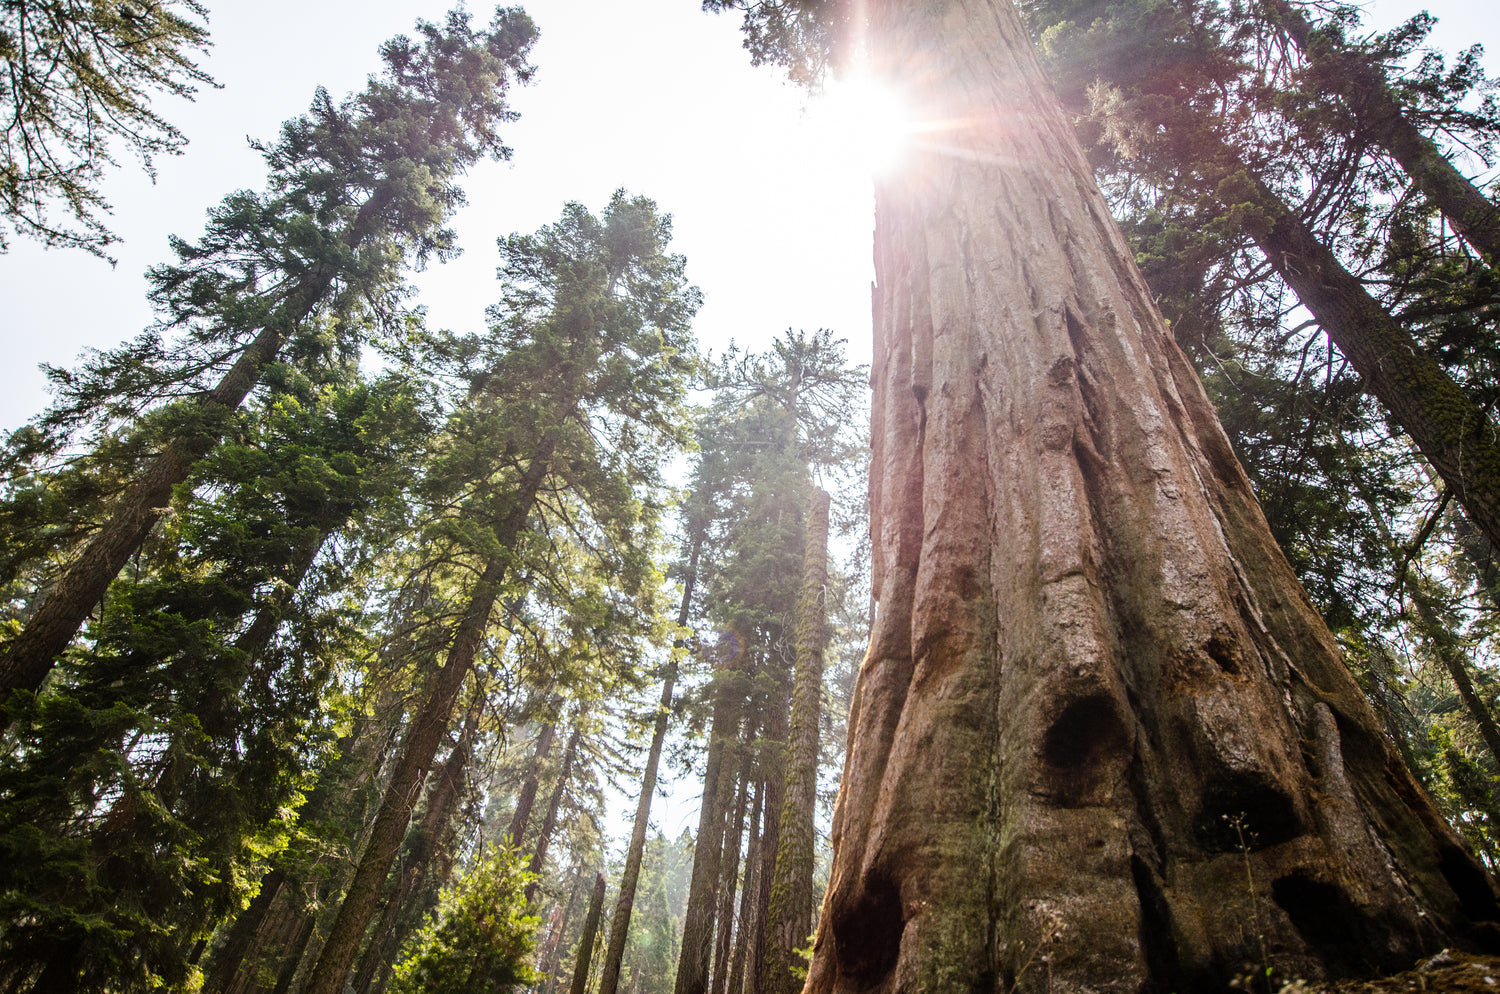 Vous pouvez voir le ciel et le soleil à travers les cimes des arbres largement espacées d'une forêt avec de grands et vieux séquoias.